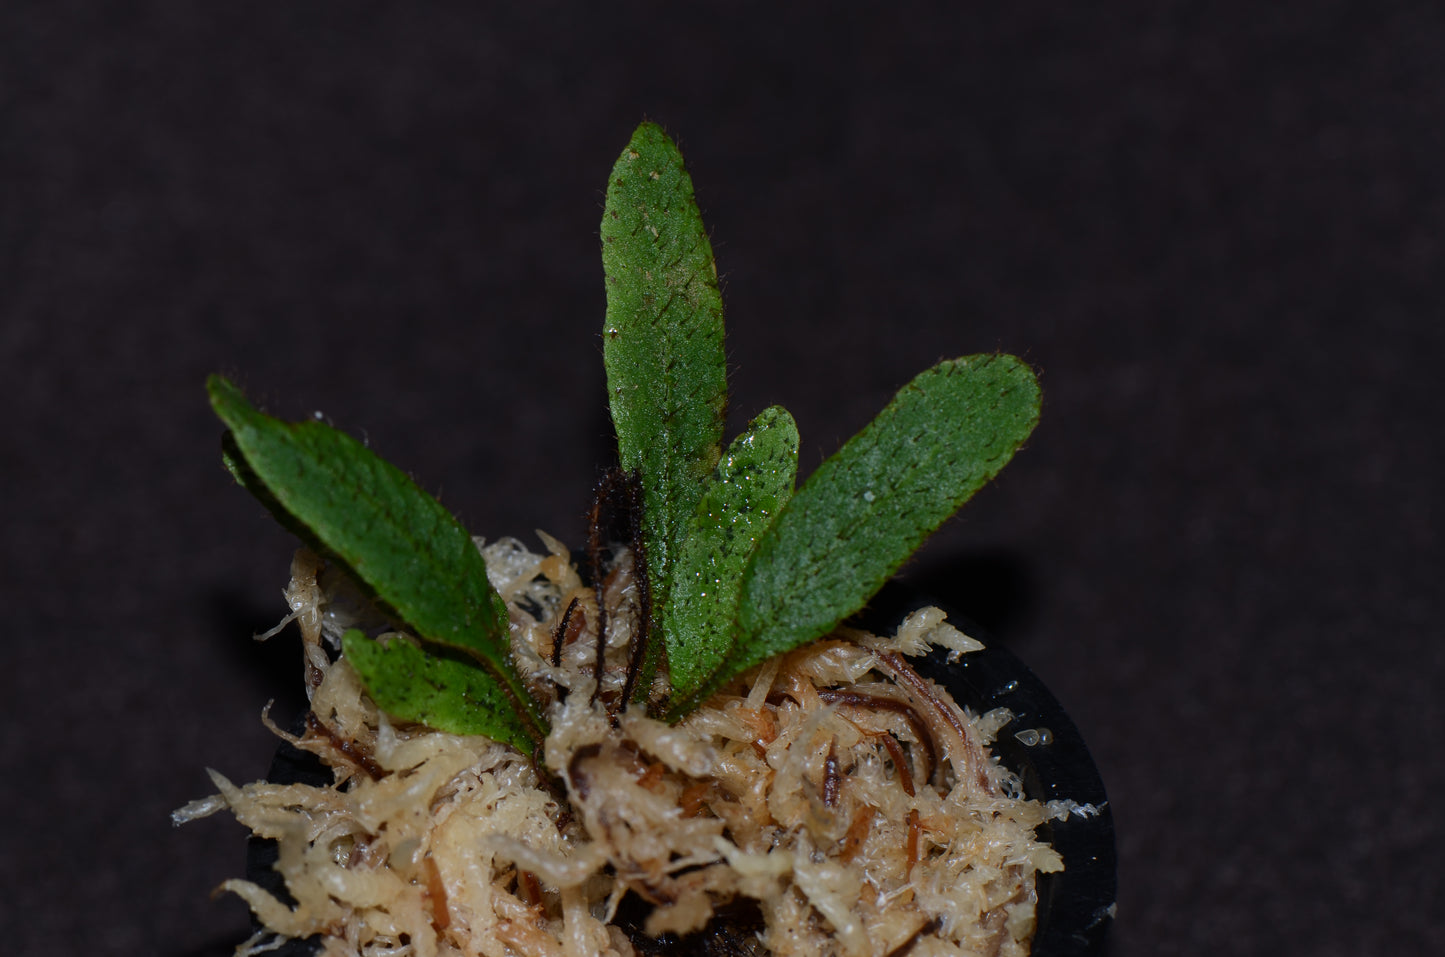 Elaphoglossum aff. crinitum "Central Peru"